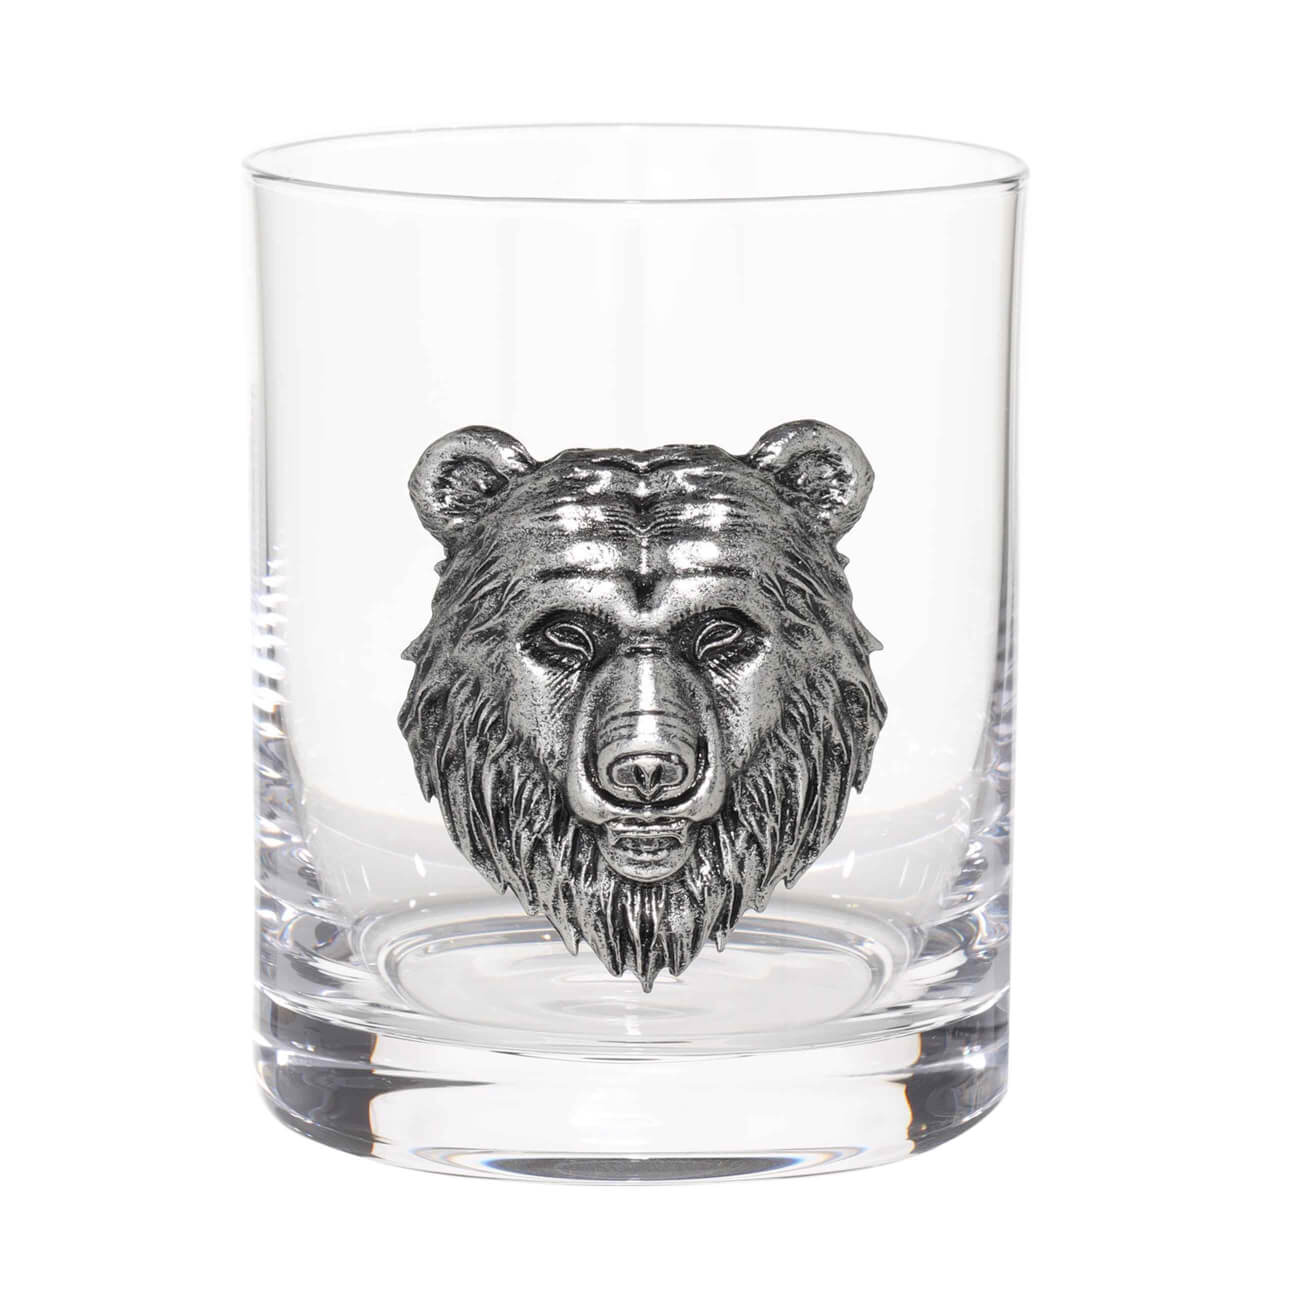 Стакан для виски, 340 мл, стекло/металл, серебристый, Медведь, Lux elements медведь в библиотеке беккер б